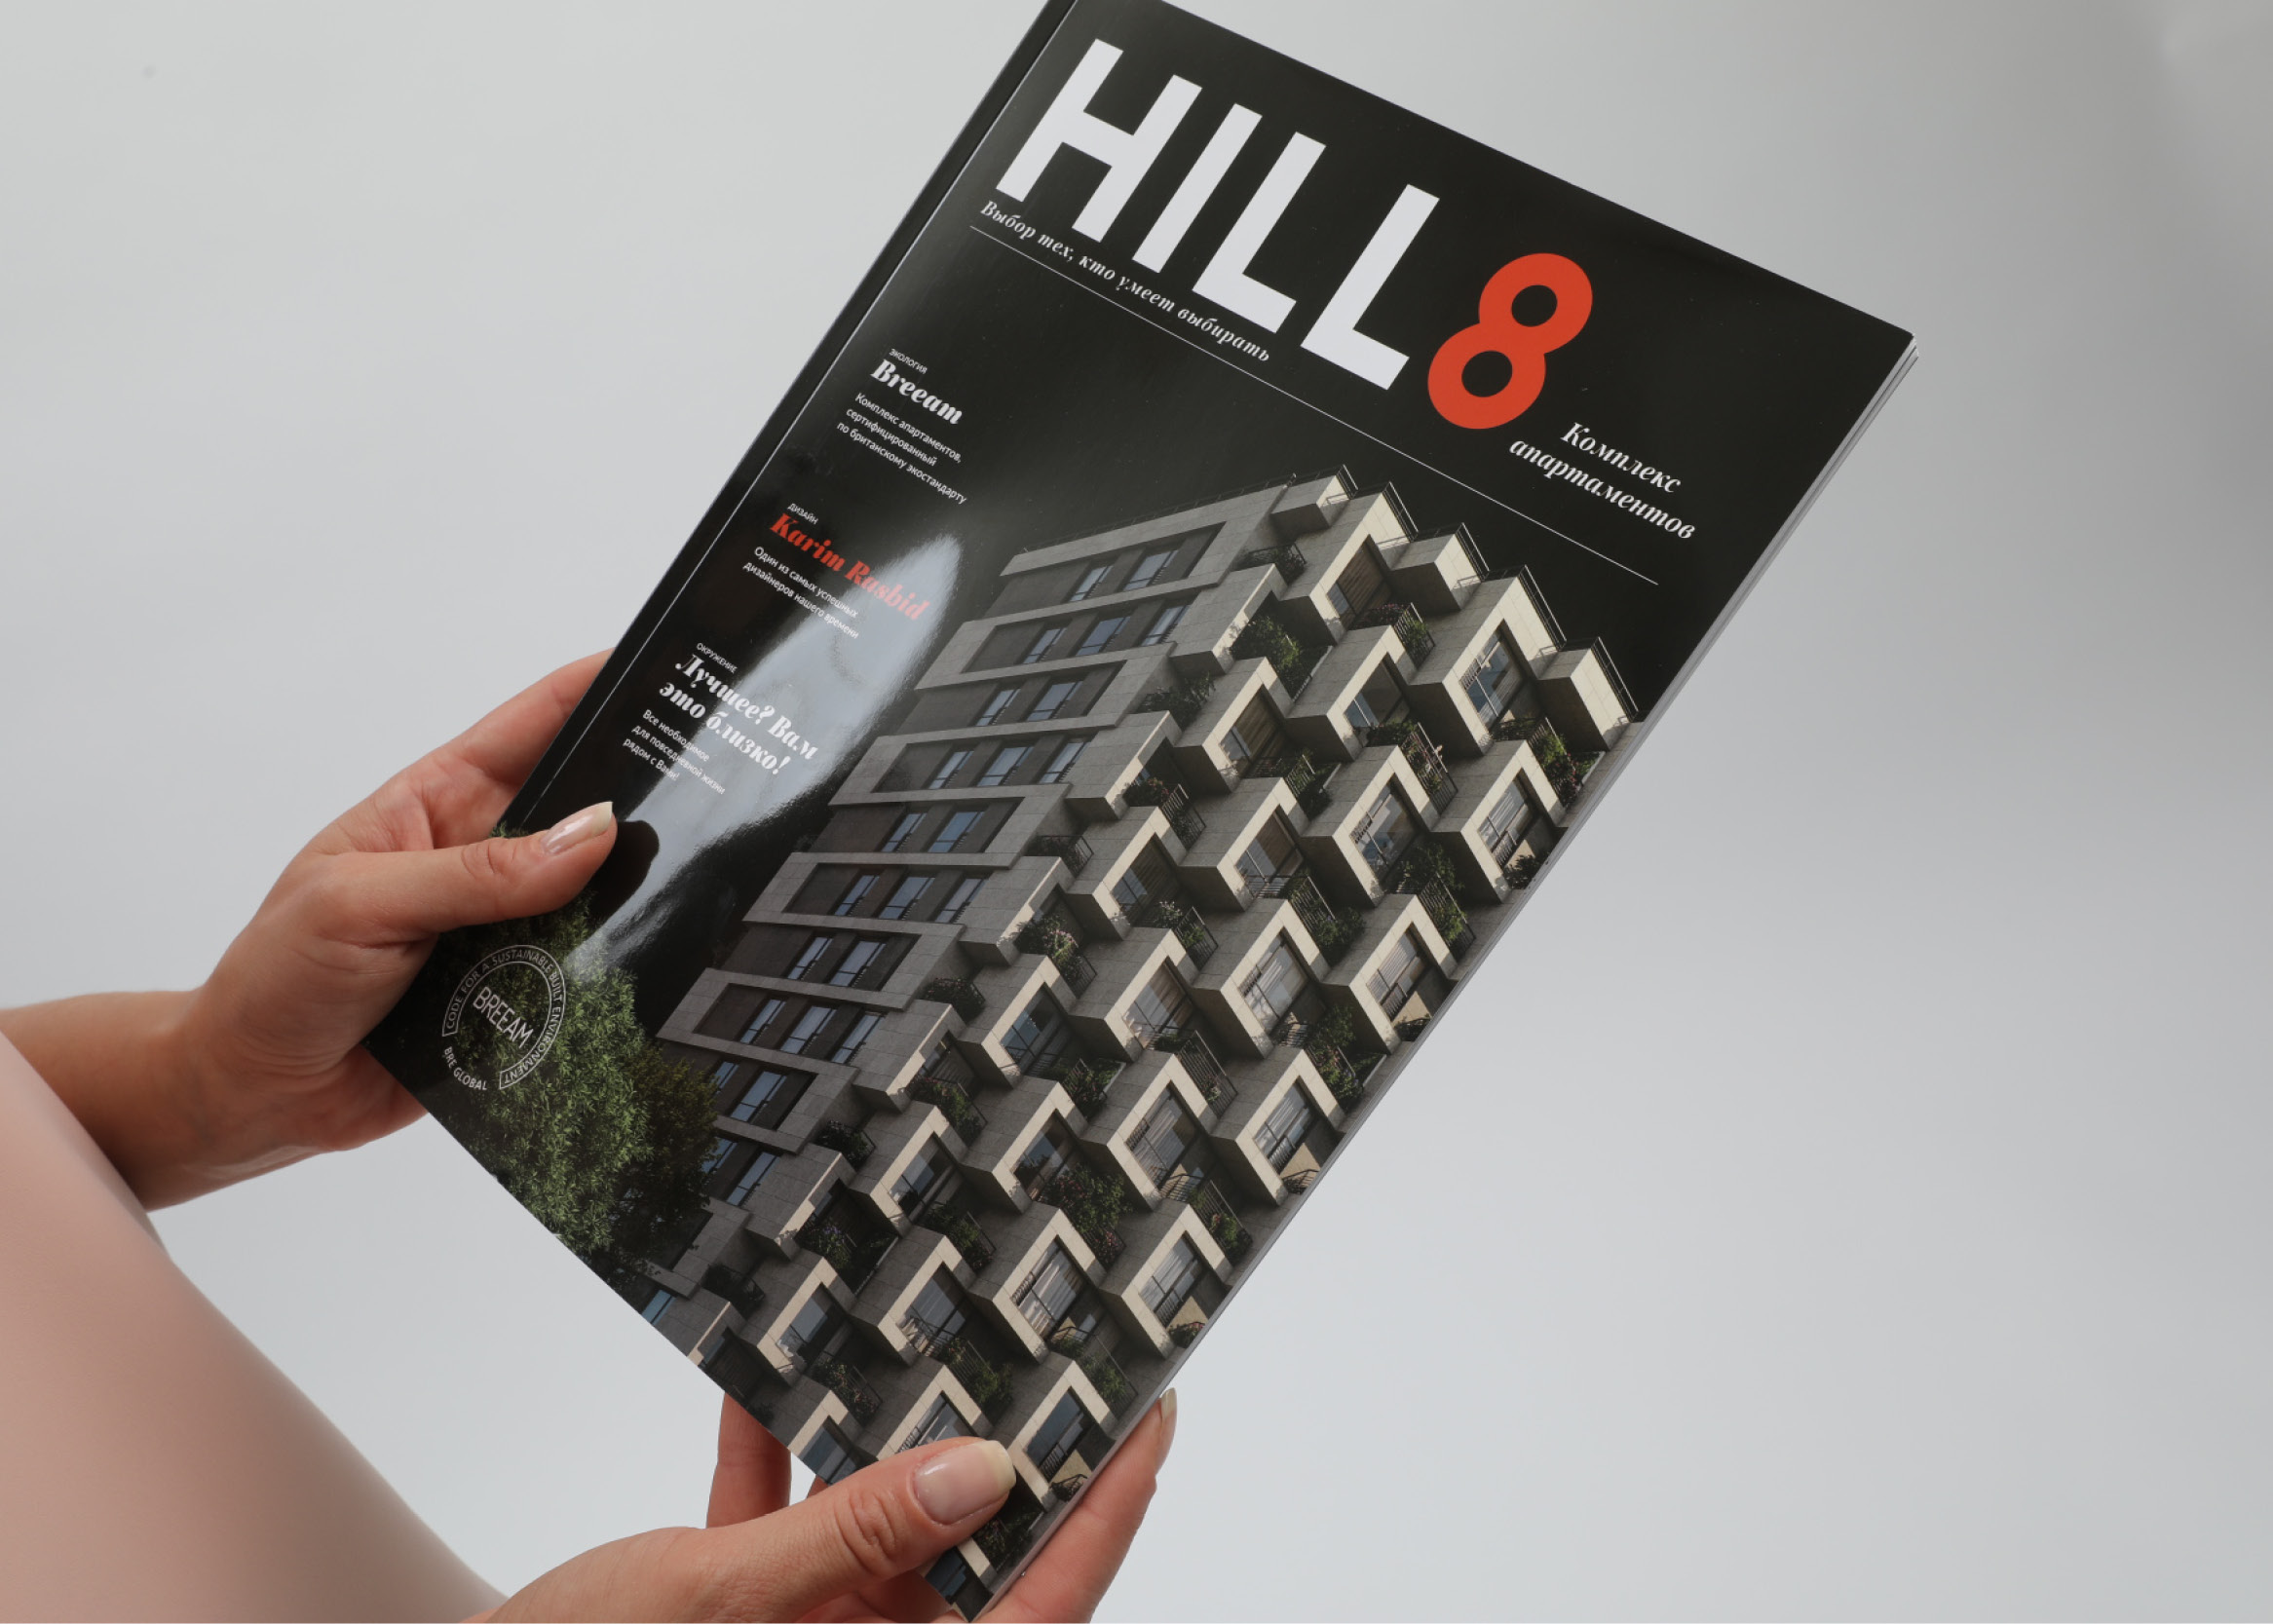 HILL8_brochure_cover.jpg